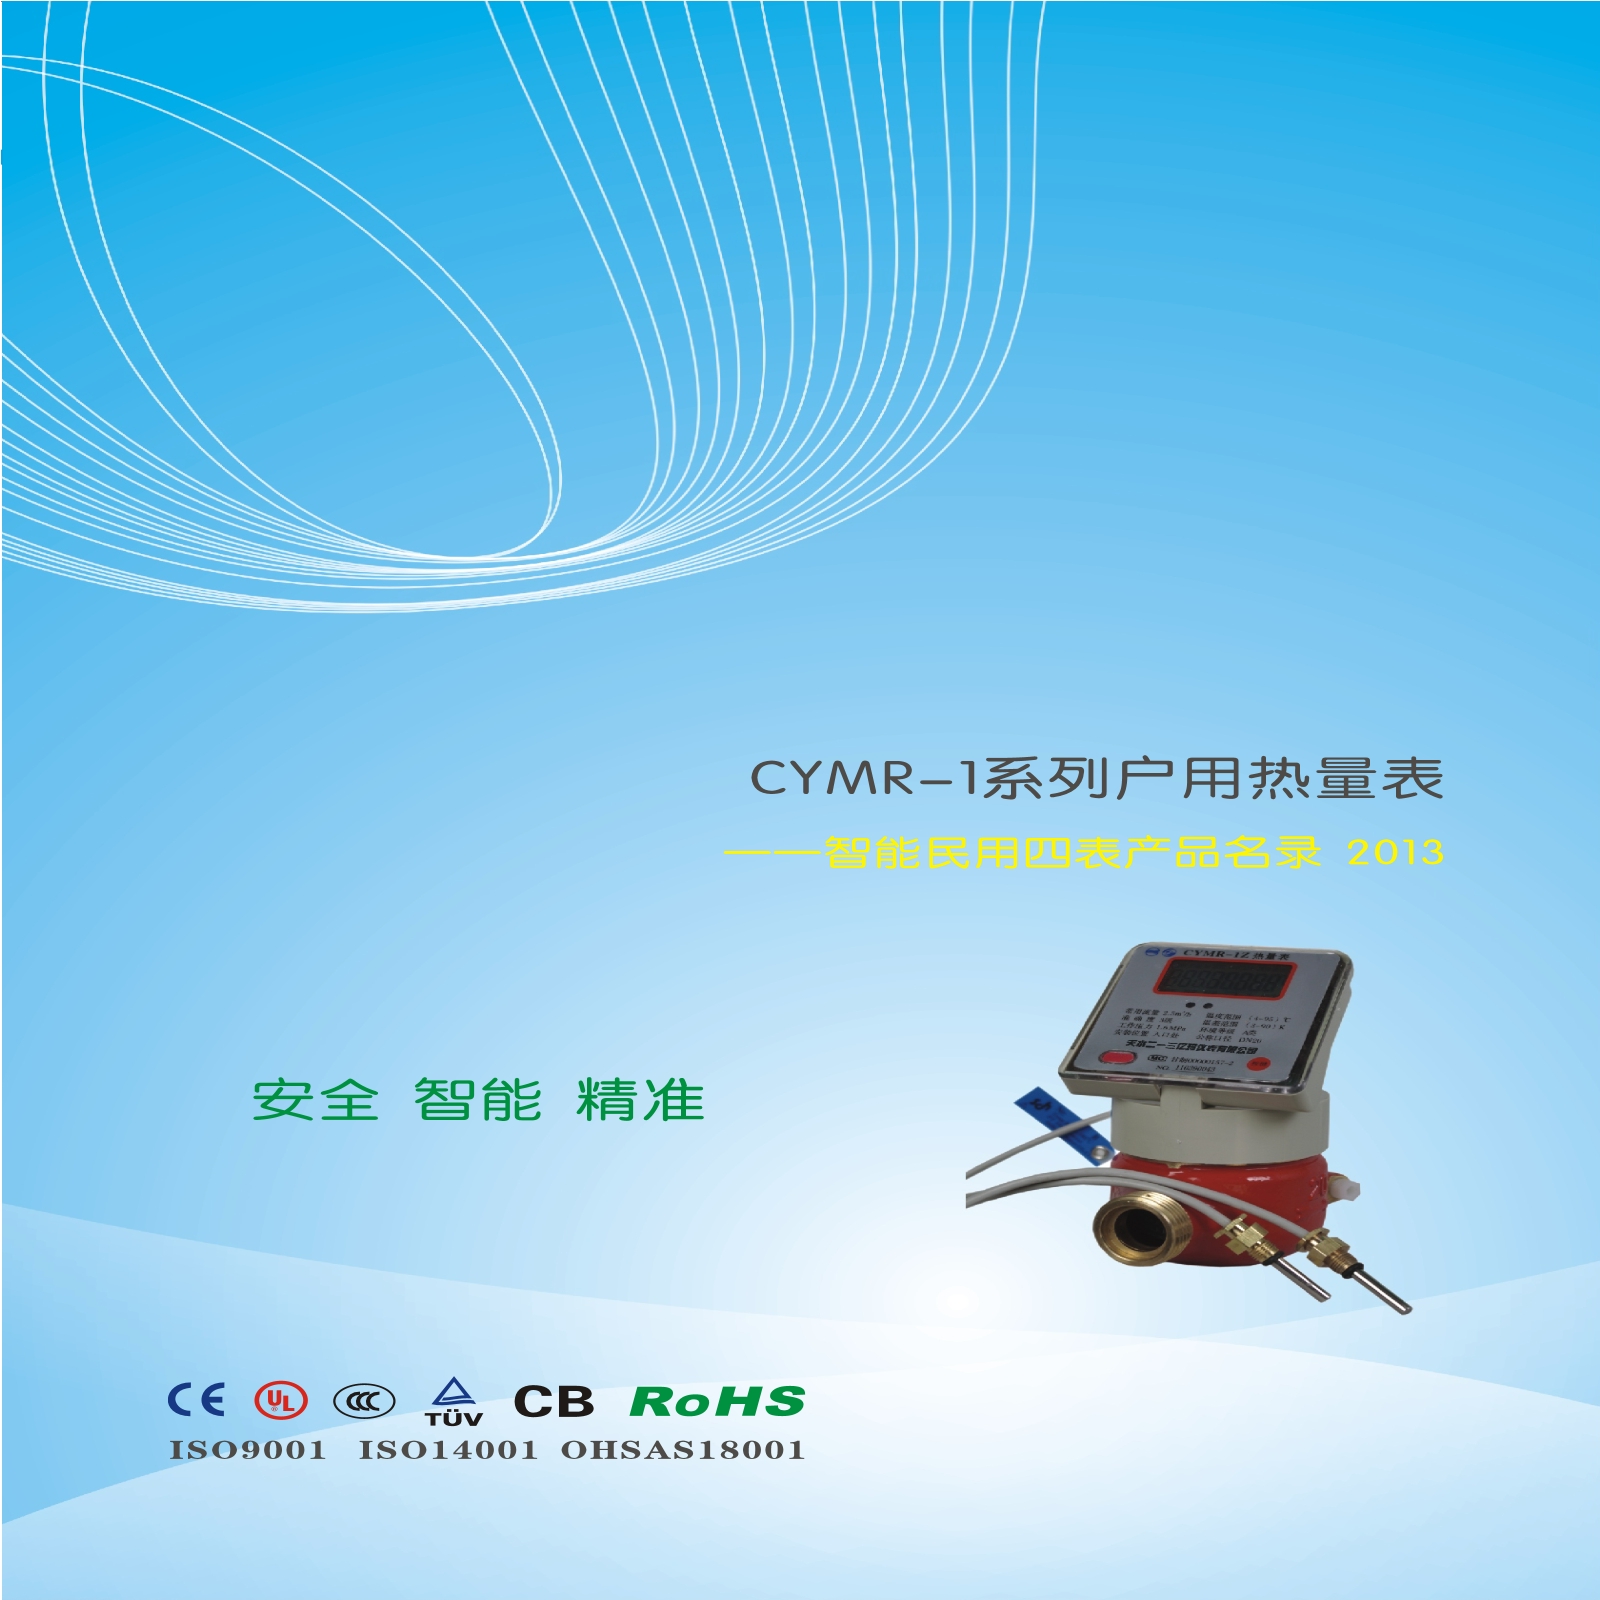 CYMR-1系列户用热量表